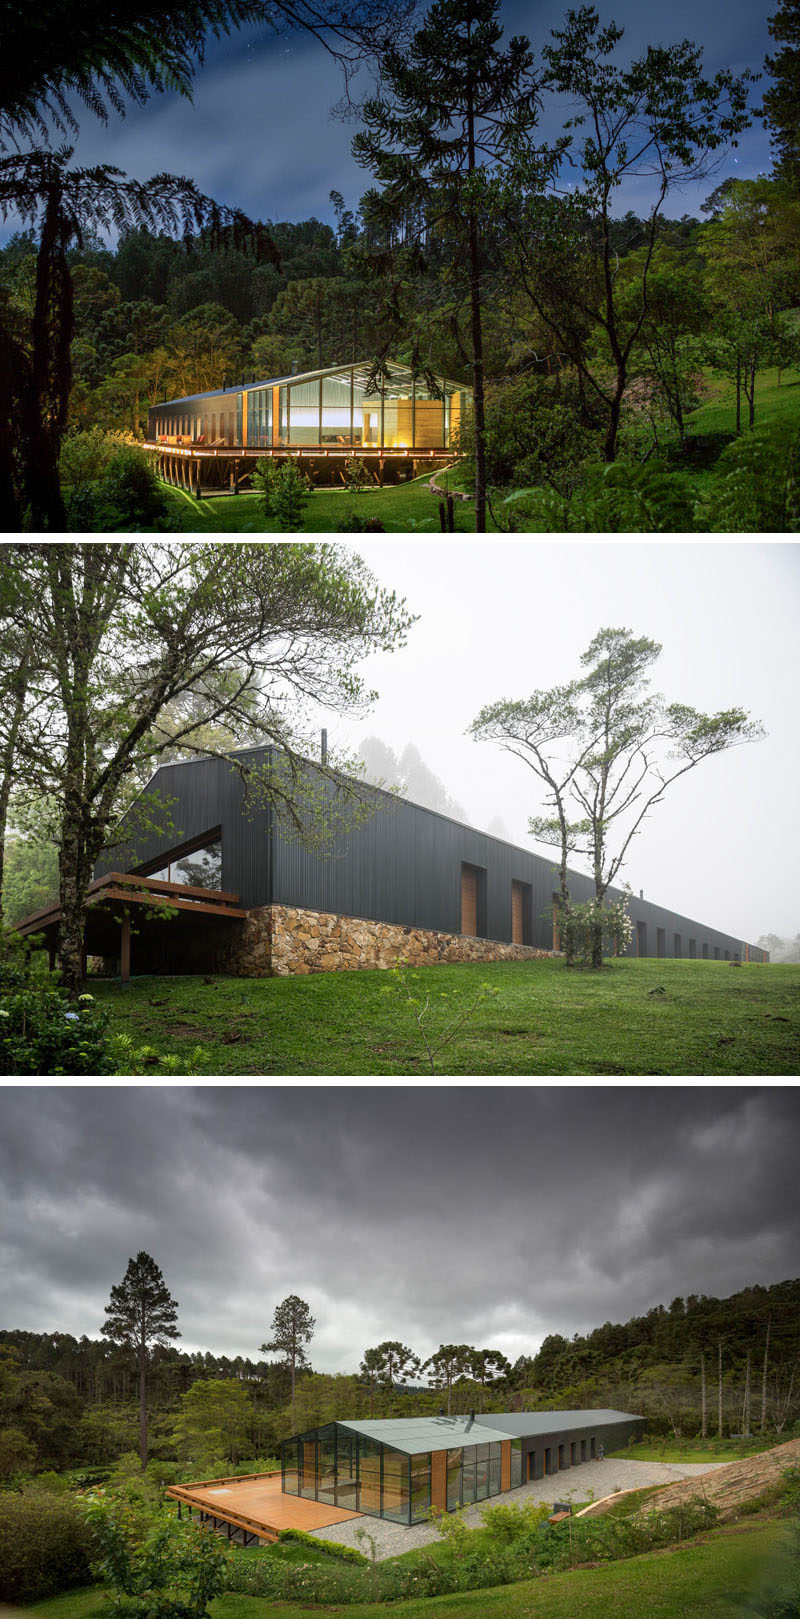 18 Современный дом в лесу // Этот дом высоко в бразильских горах окружен пышным тропическим лесом, чтобы обеспечить максимально здоровый воздух. #ModernHouse #ModernArchitecture #HouseInForest #HouseDesign